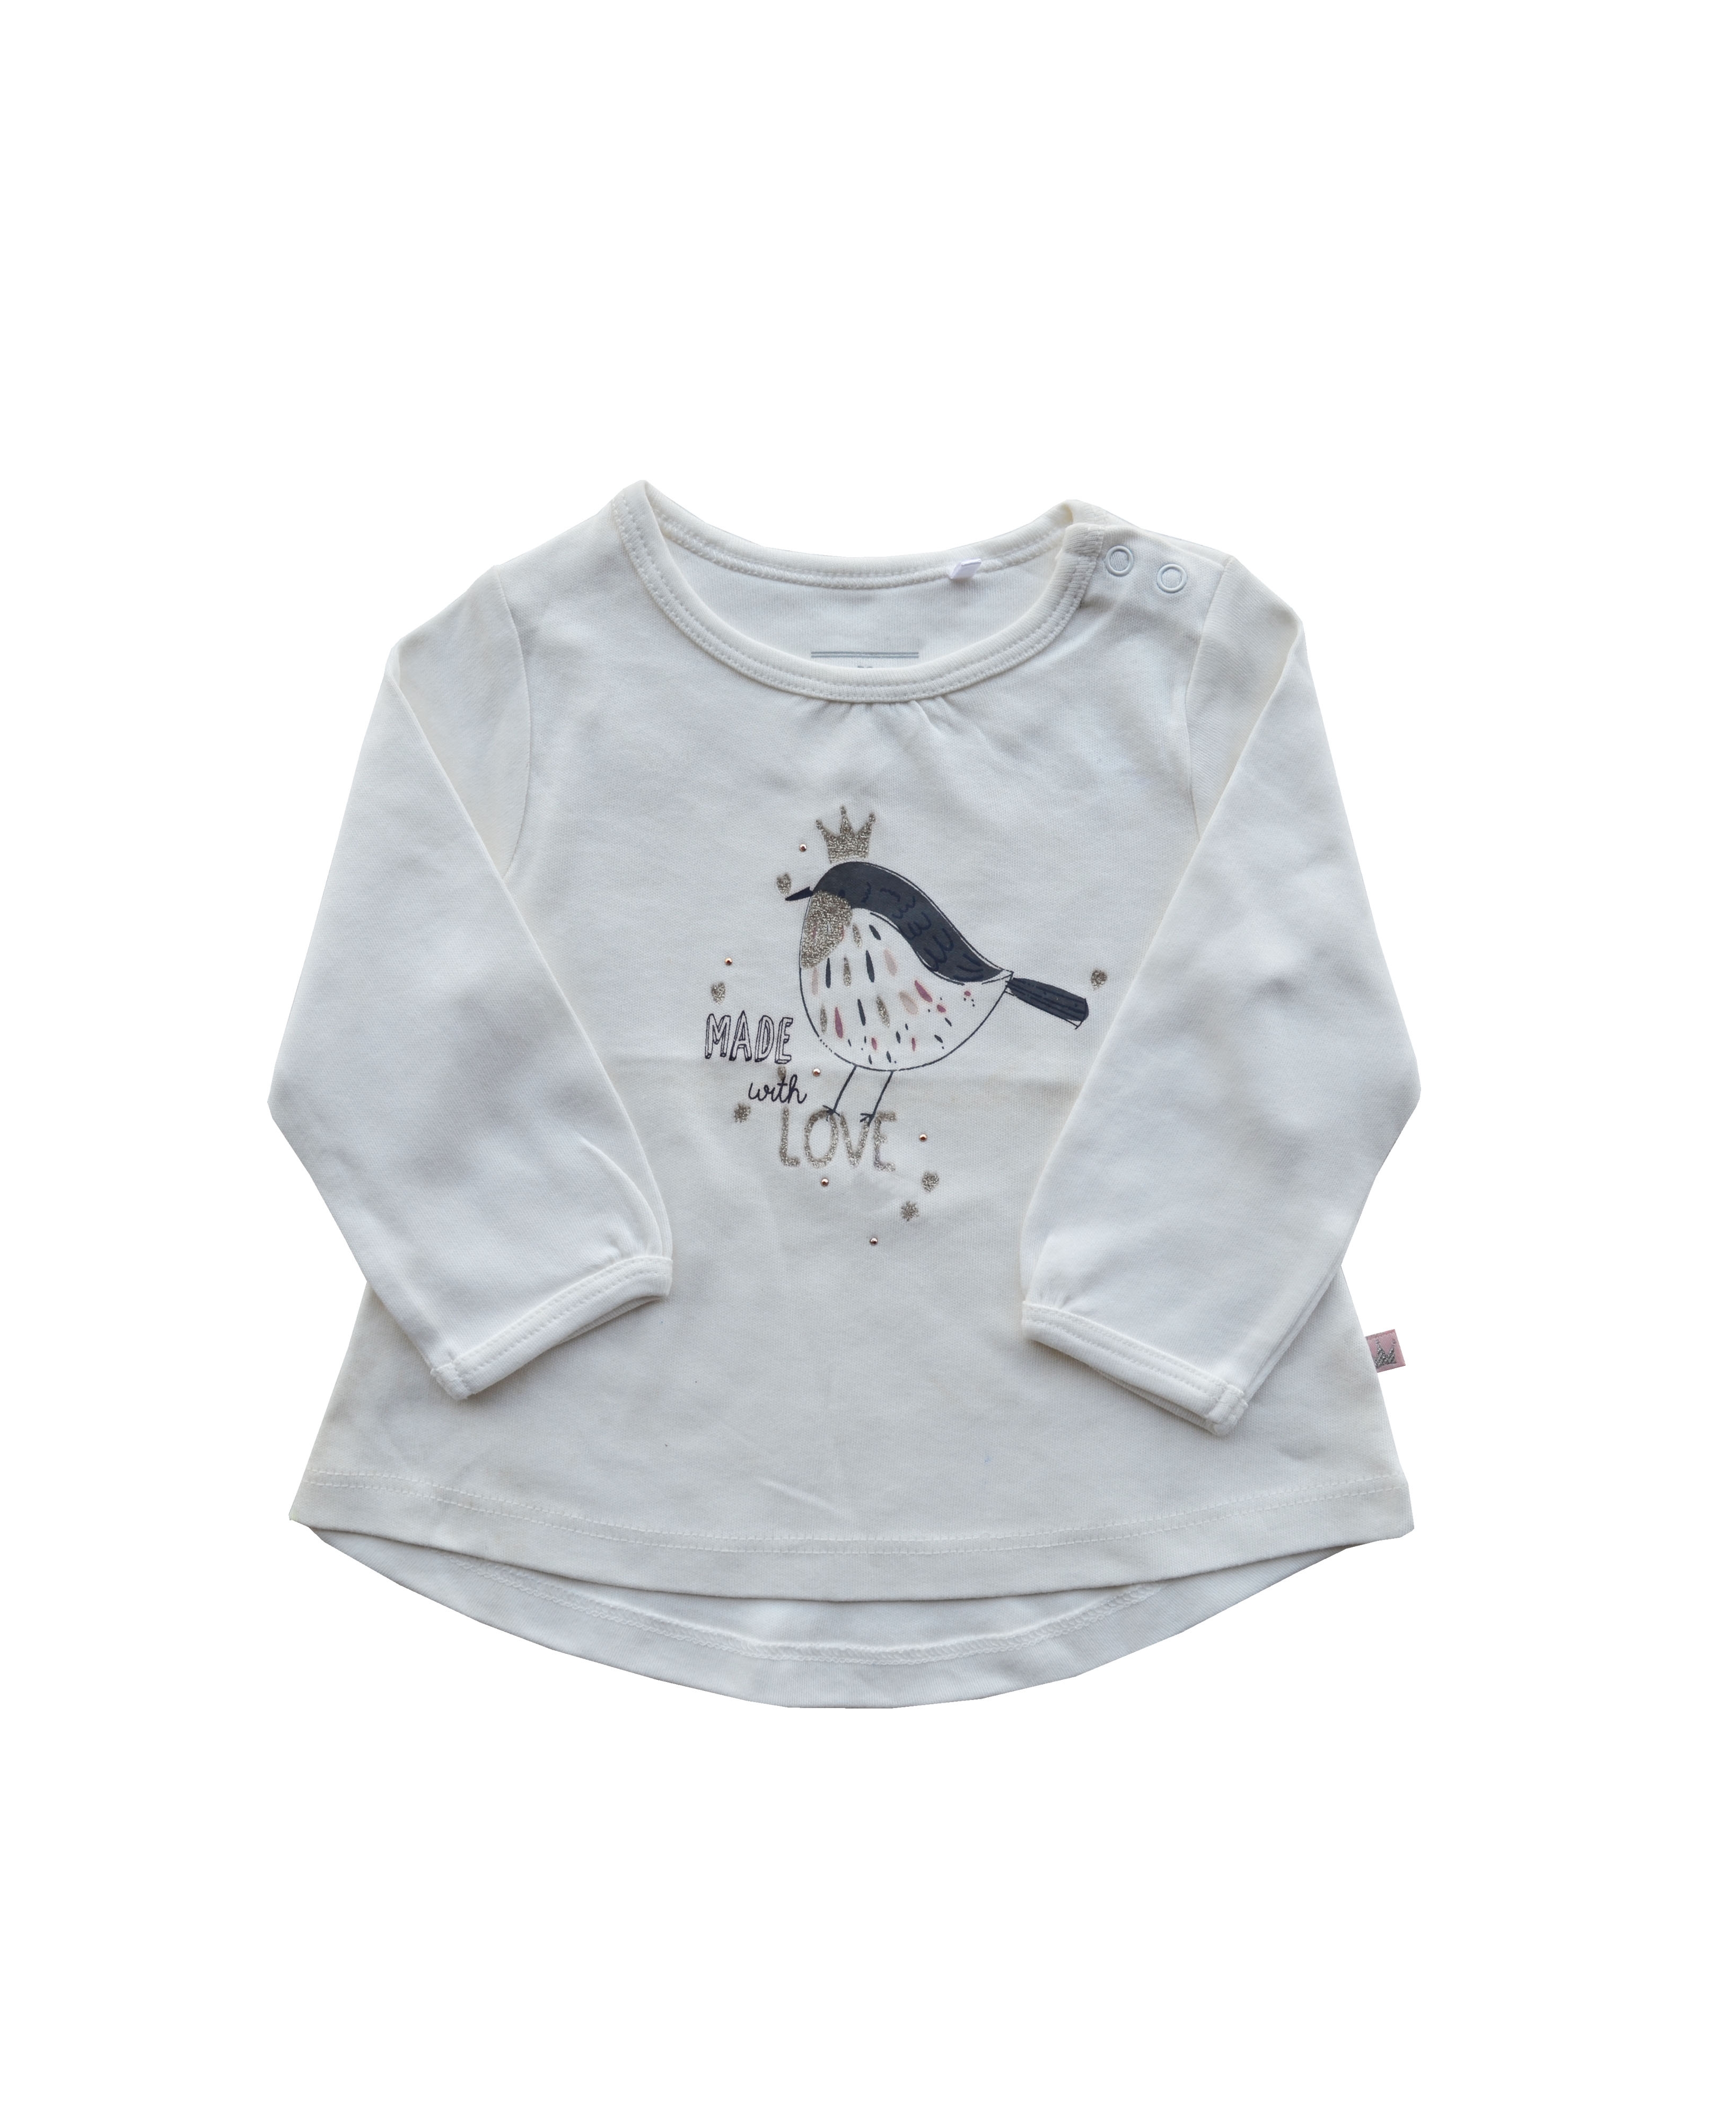 Babeez | White Top with Bird print (100% Cotton Interlock Biowash) undefined